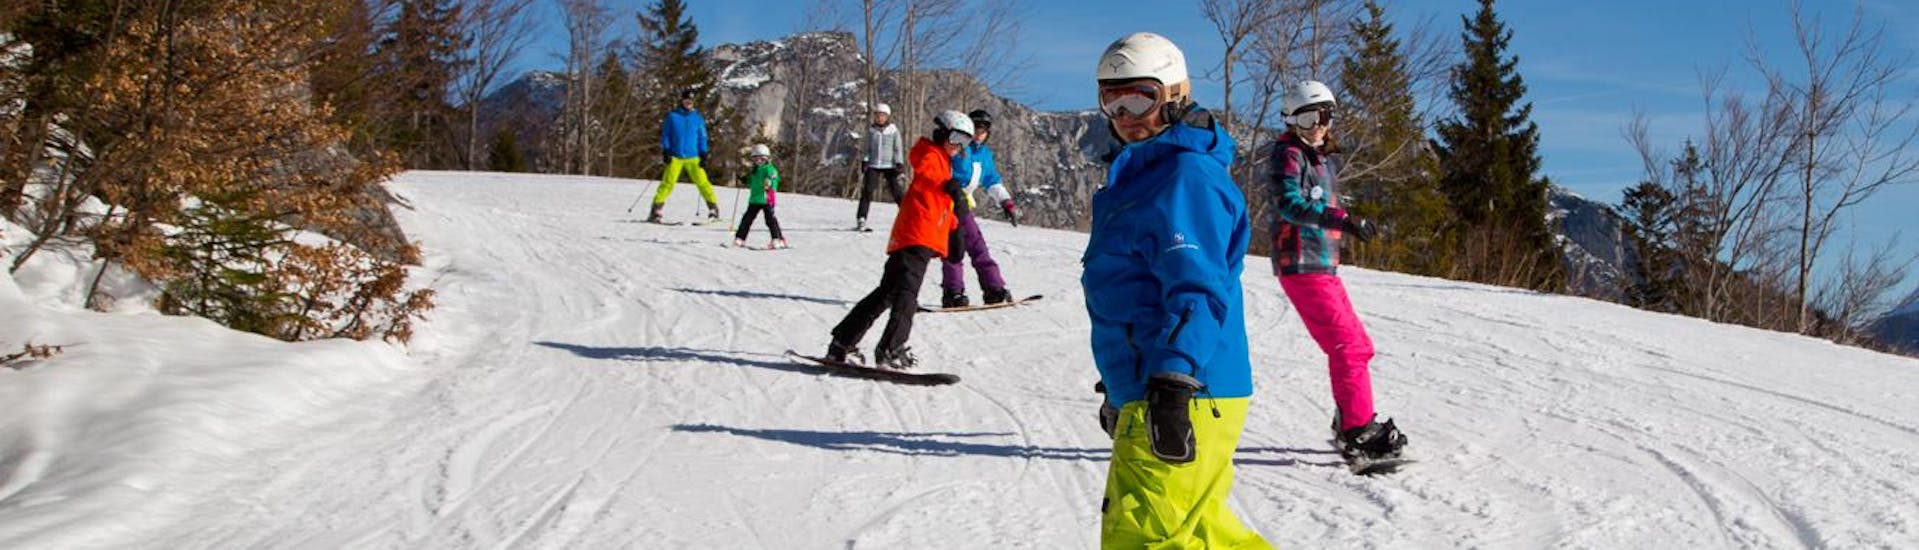 Snowboardkurs für Kinder (6-15 J.) für Fortgeschrittene.